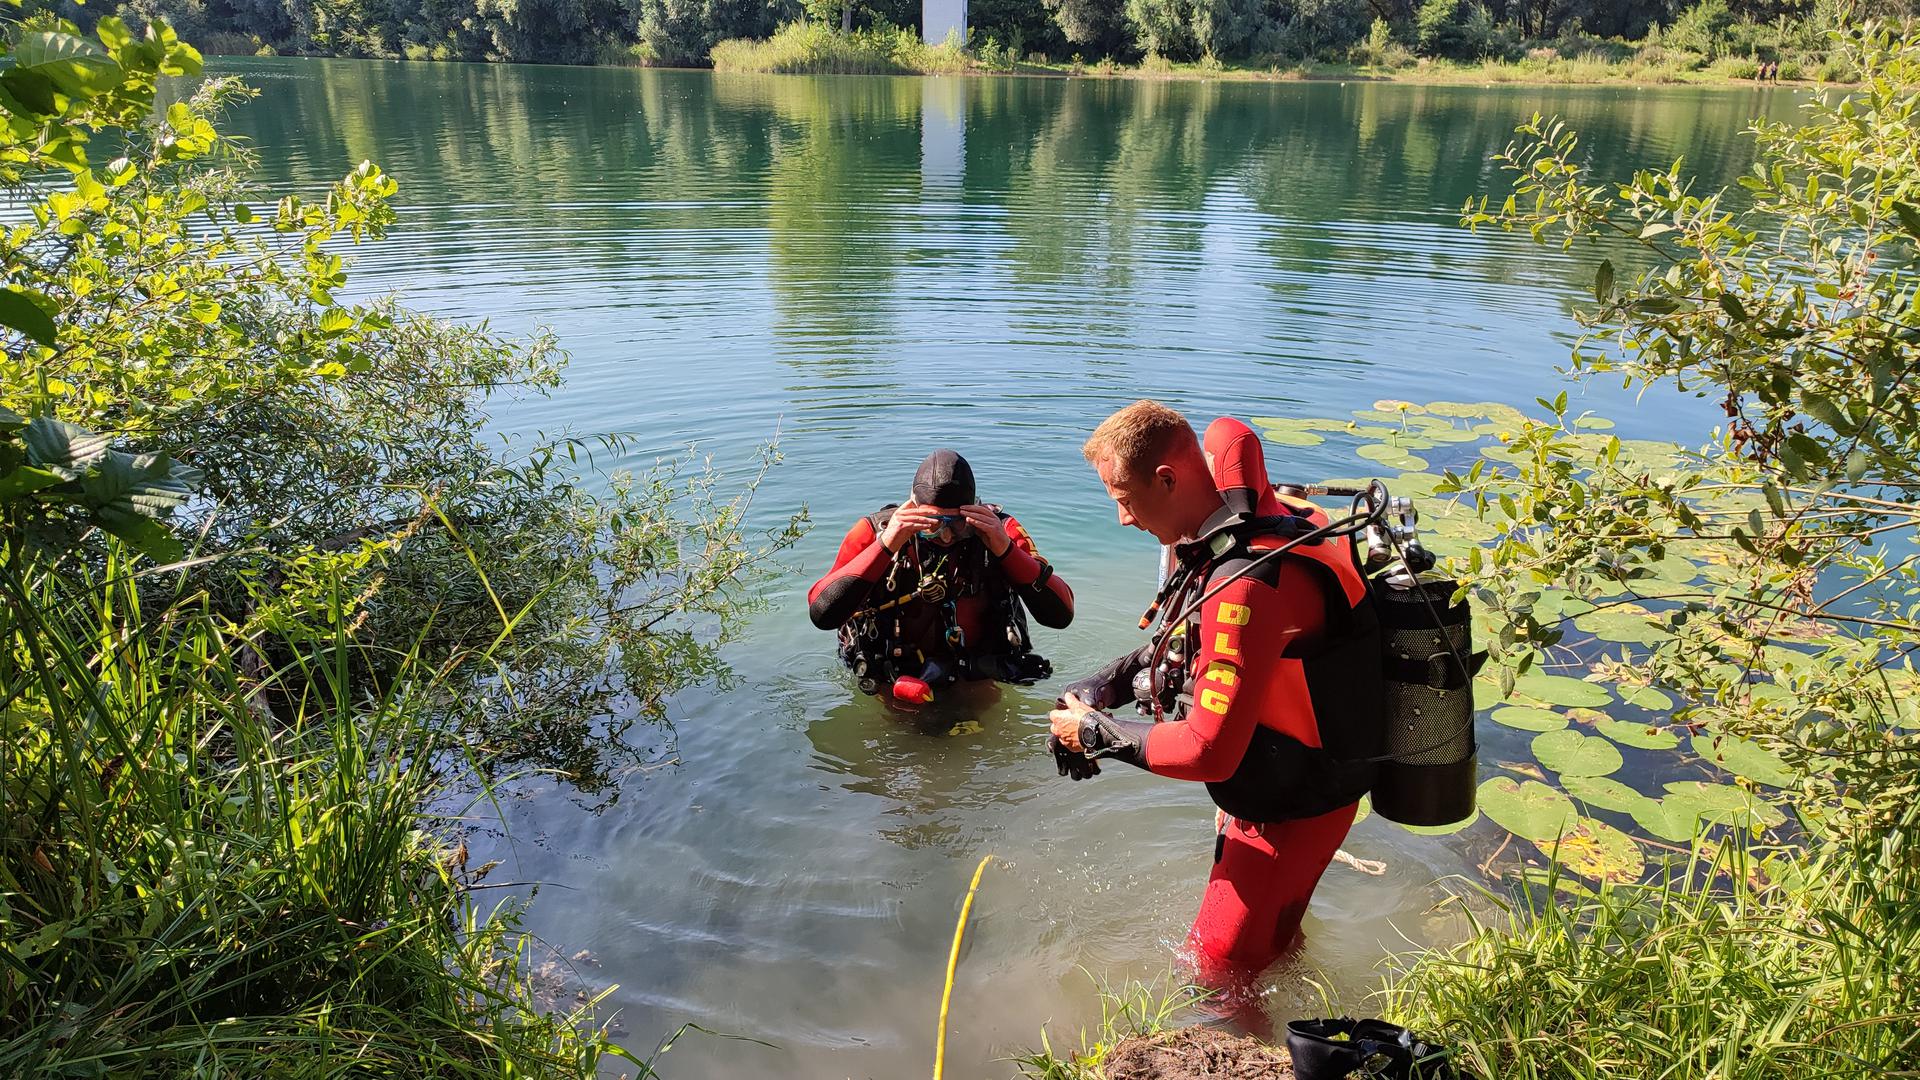 Feuerwehr, DLRG und Polizei haben am Baggersee in Stutensee-Staffort nach einer Person gesucht. 